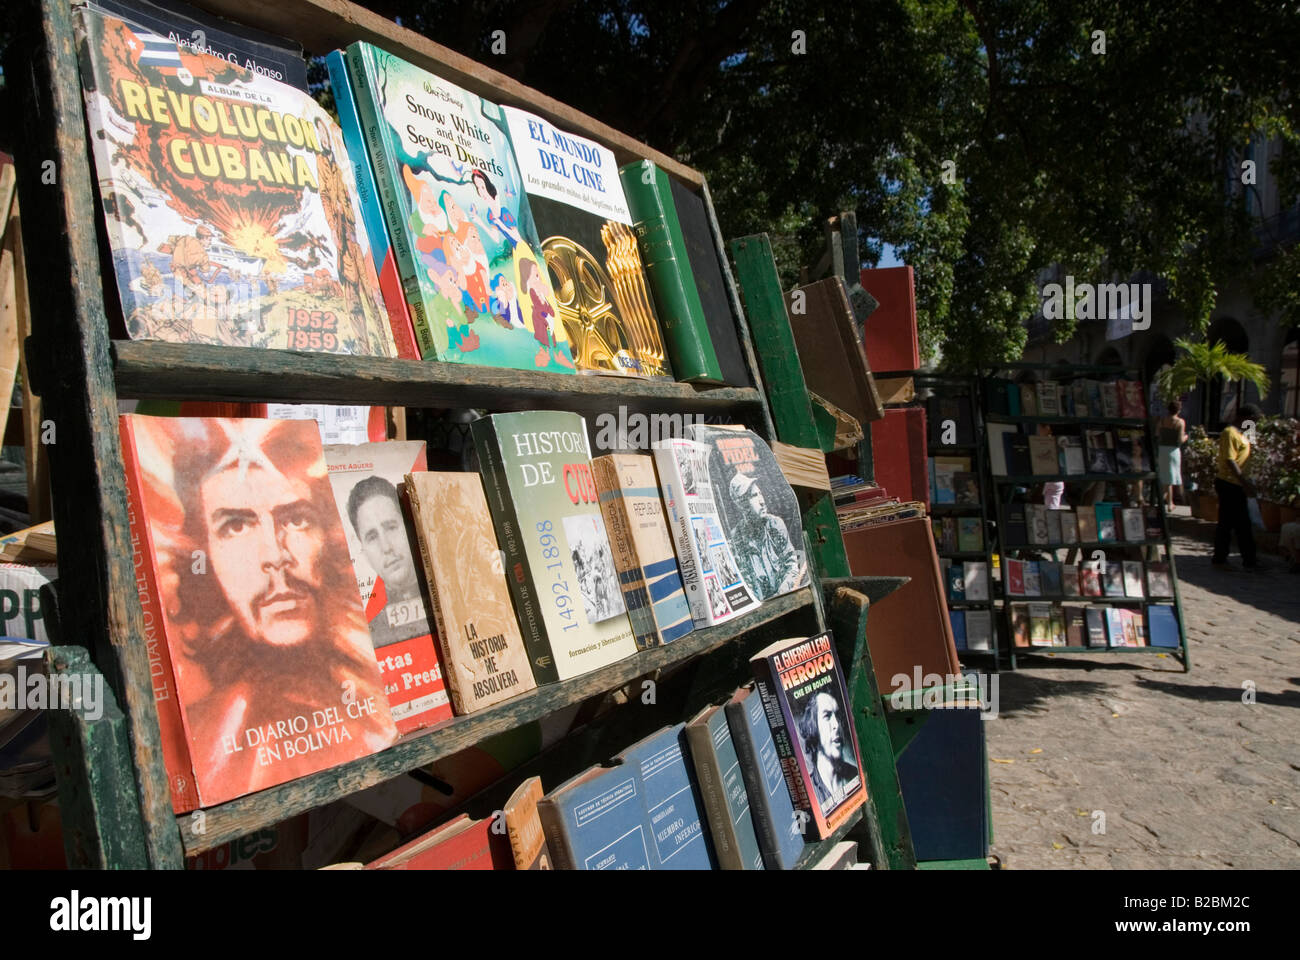 Gebrauchte Bücher auf der kubanischen sozialistischen Revolution für den Verkauf auf einem Büchermarkt am Plaza De Armas in La Habana Vieja Havanna Kuba Stockfoto